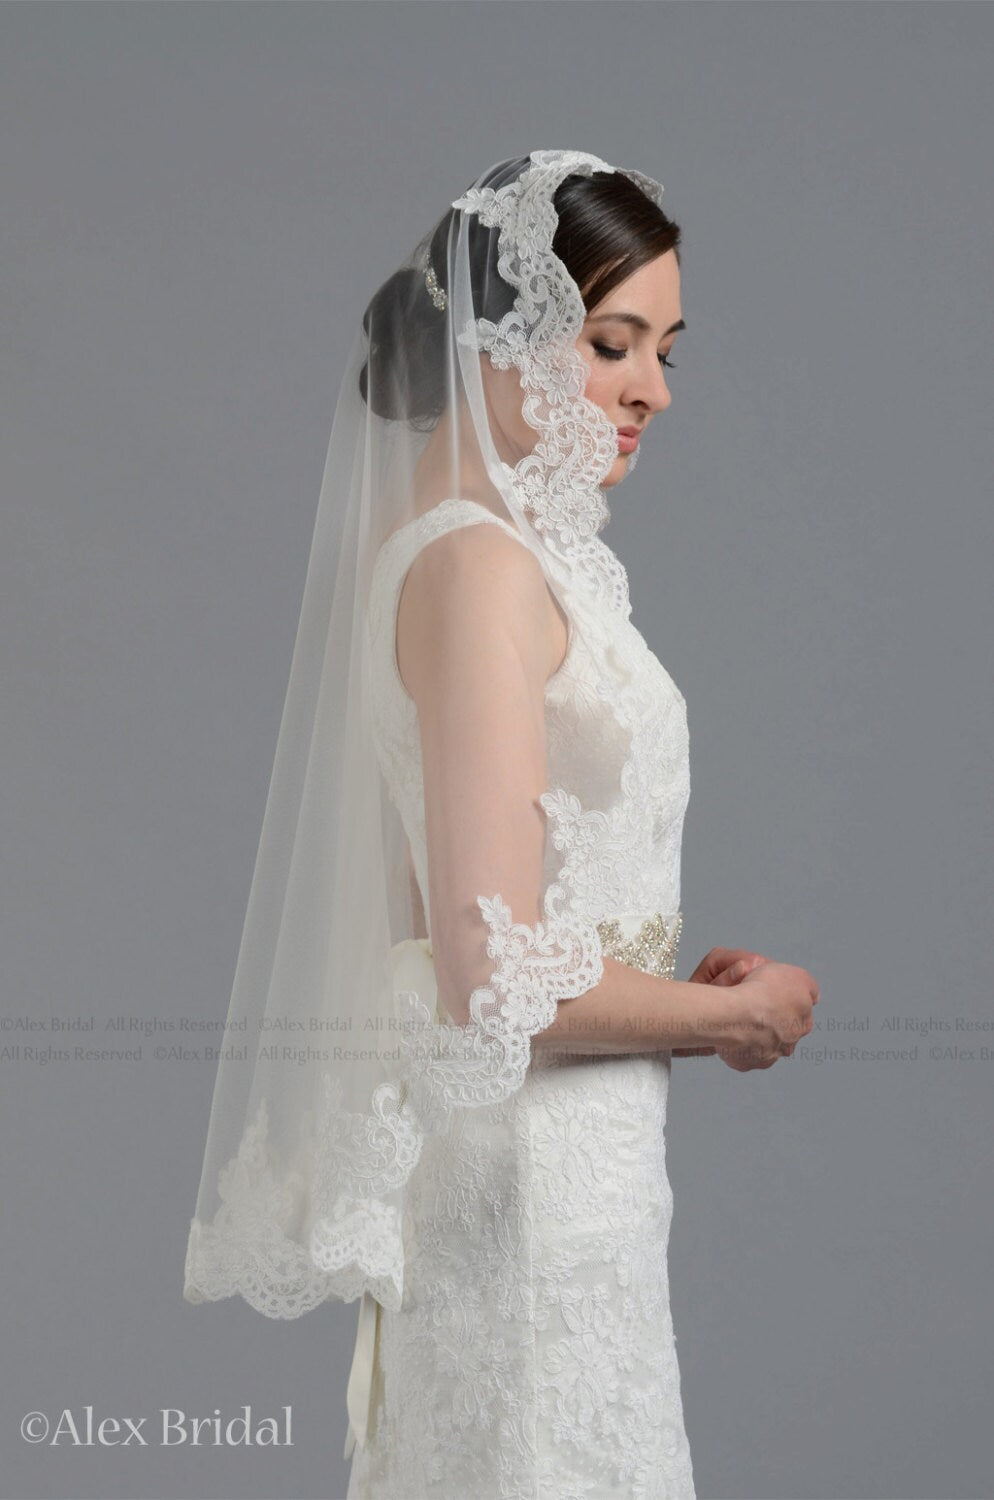 wedding veil, bridal veil, mantilla veil, fingertip length veil, wedding veil ivory, wedding veil white, chapel length veil